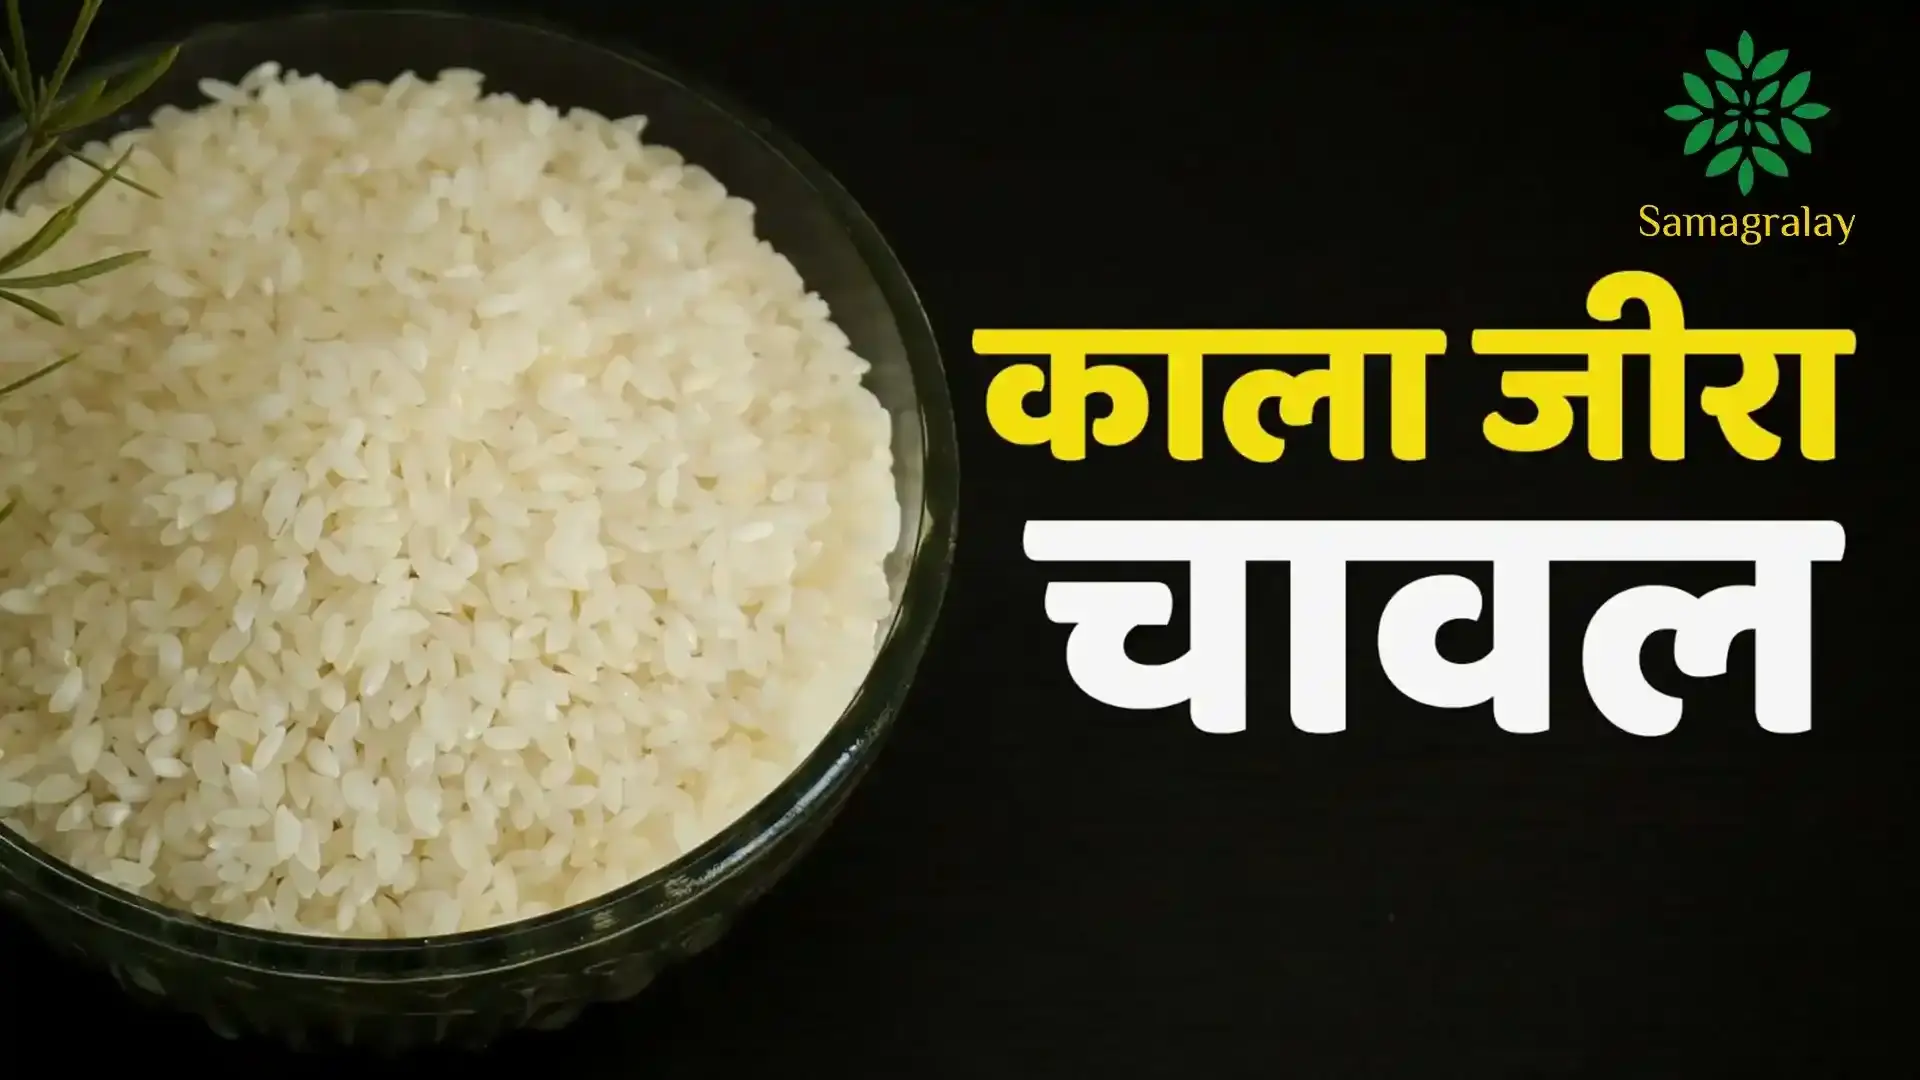 काला जीरा चावल किस राज्य का खाद्य उत्पाद है? 